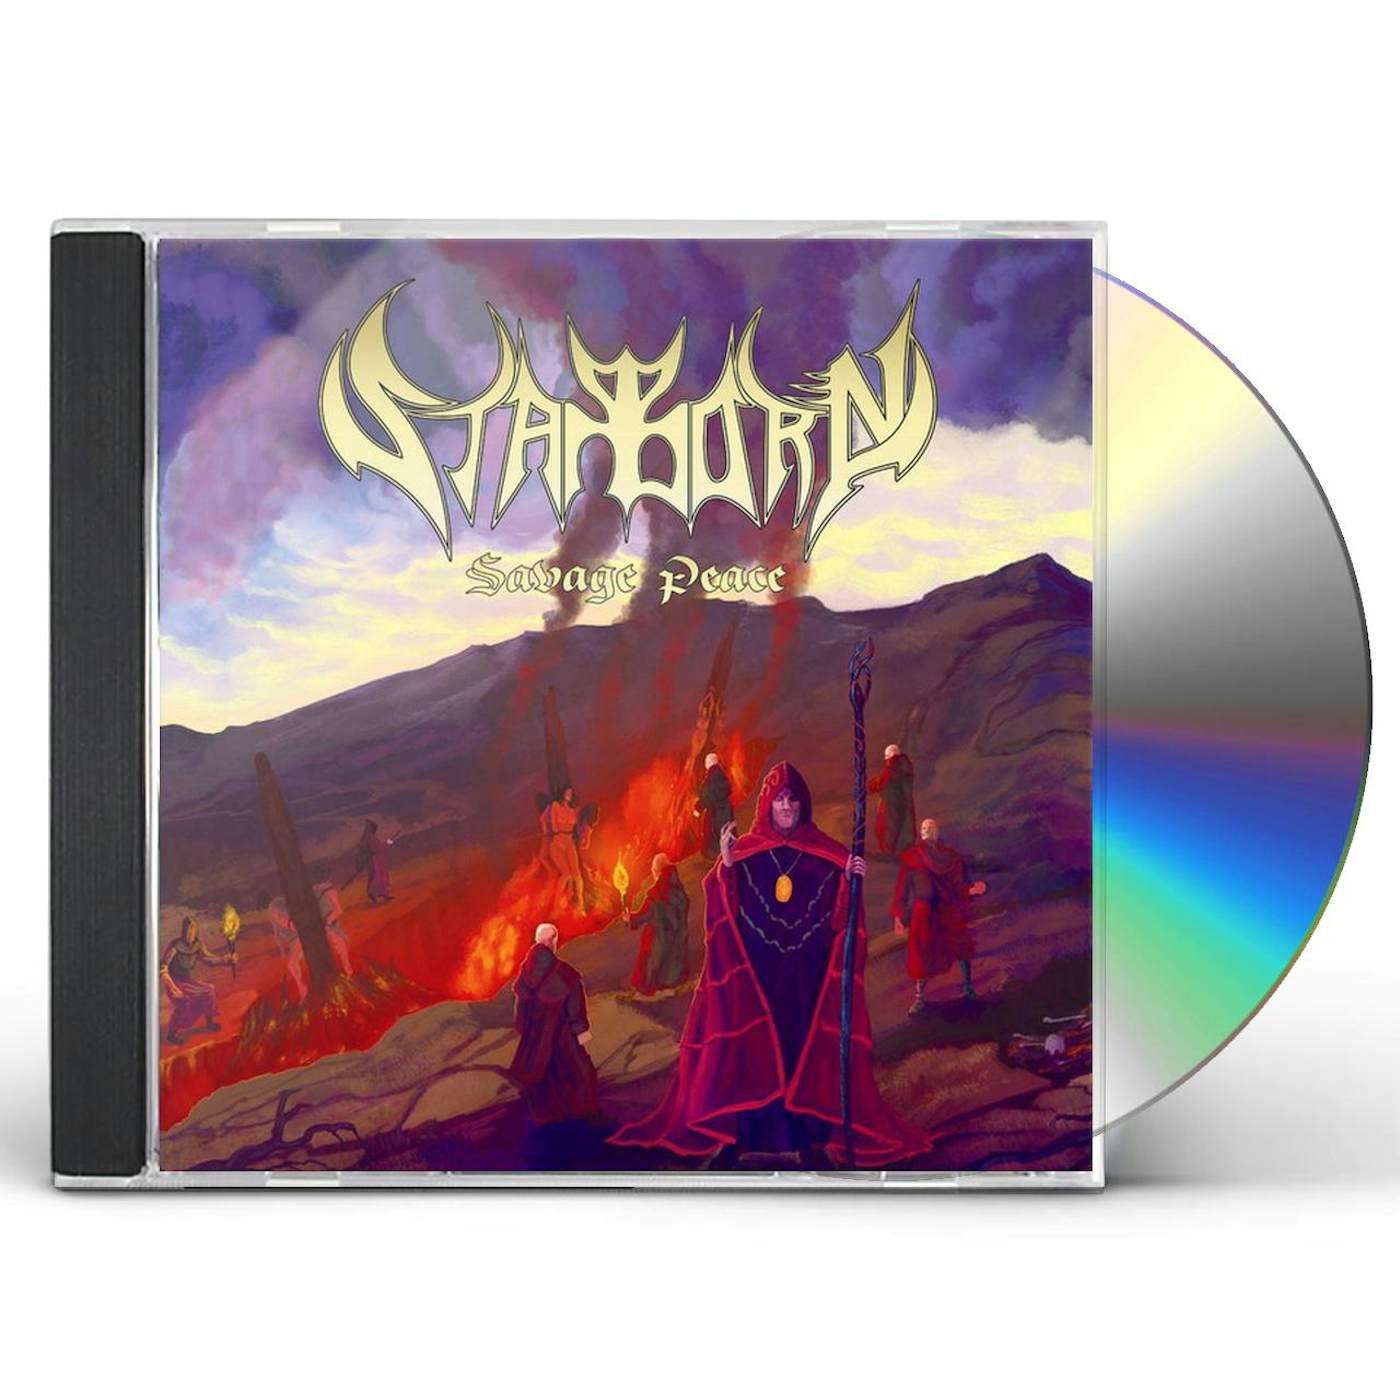 Starborn SAVAGE PEACE CD